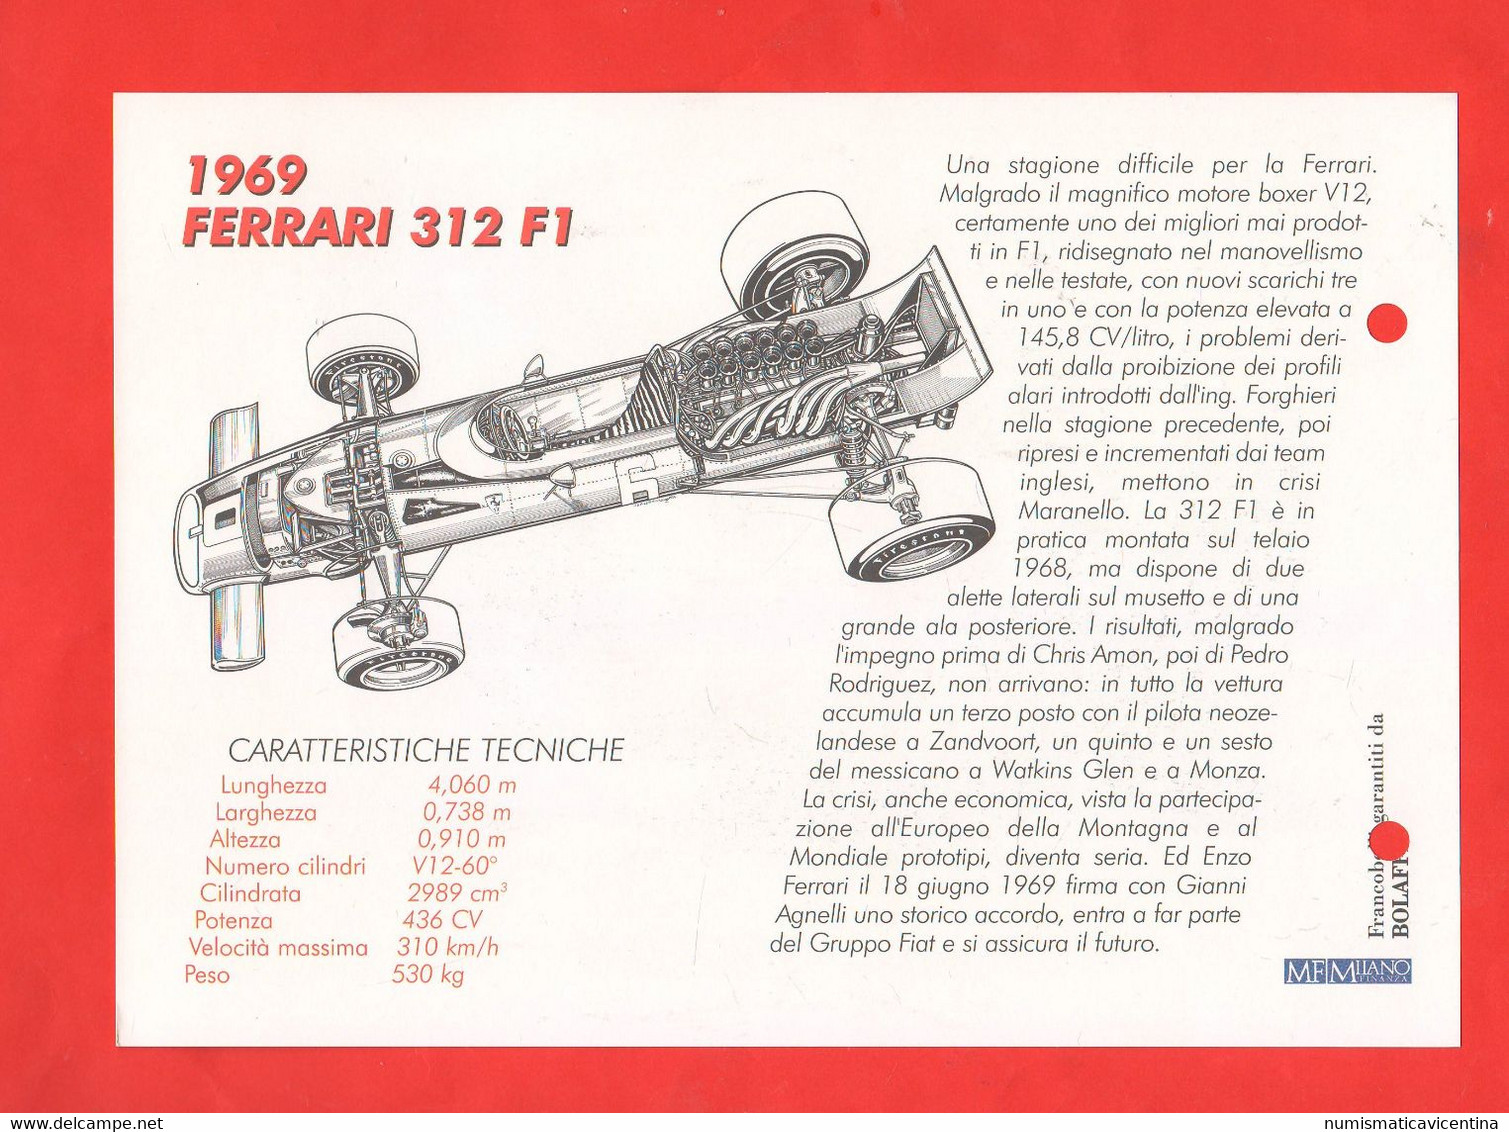 Ferrari F 1 cars racing 20 schede  20 francobolli stati diversi schede tecniche lot dedicated to Ferrari